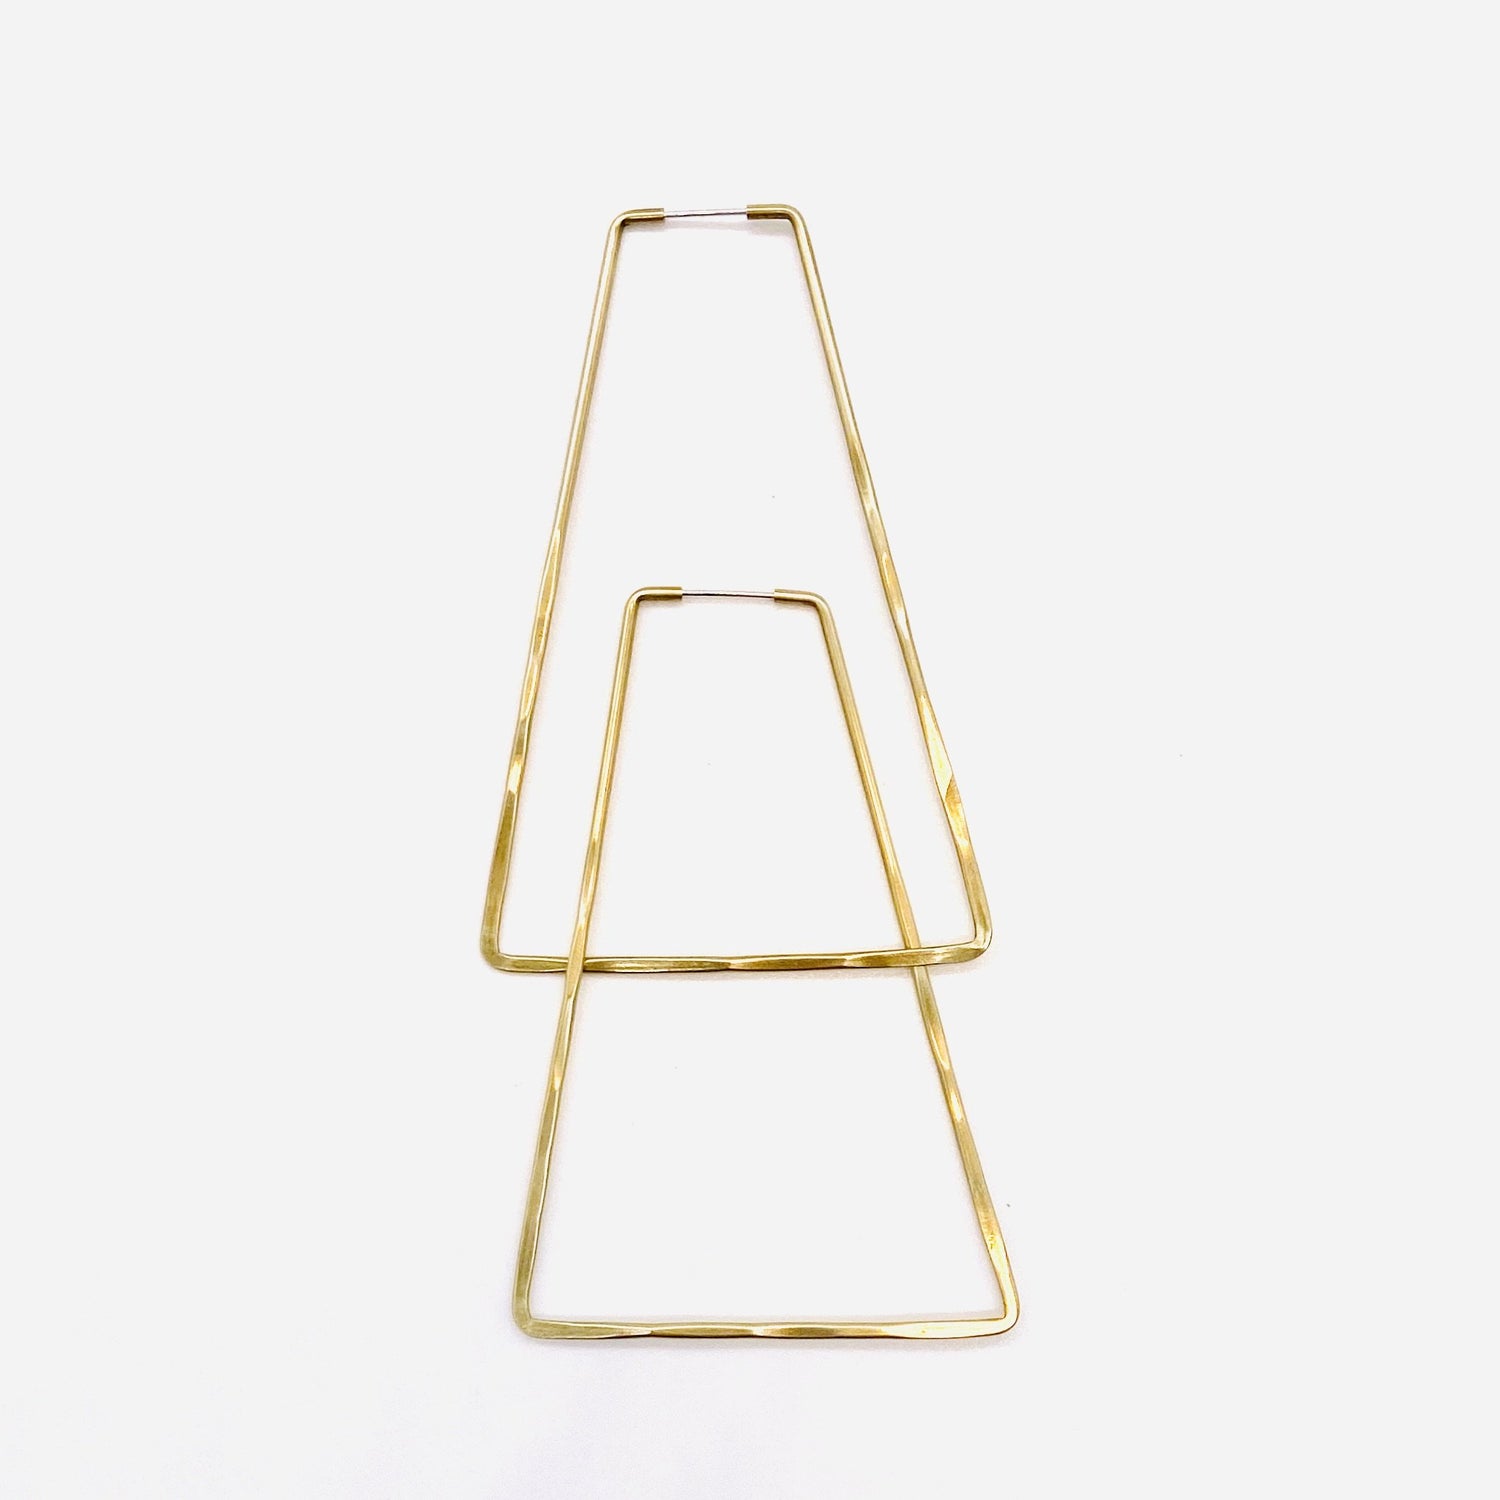 Brass geometric hoop earrings in triangle shape.